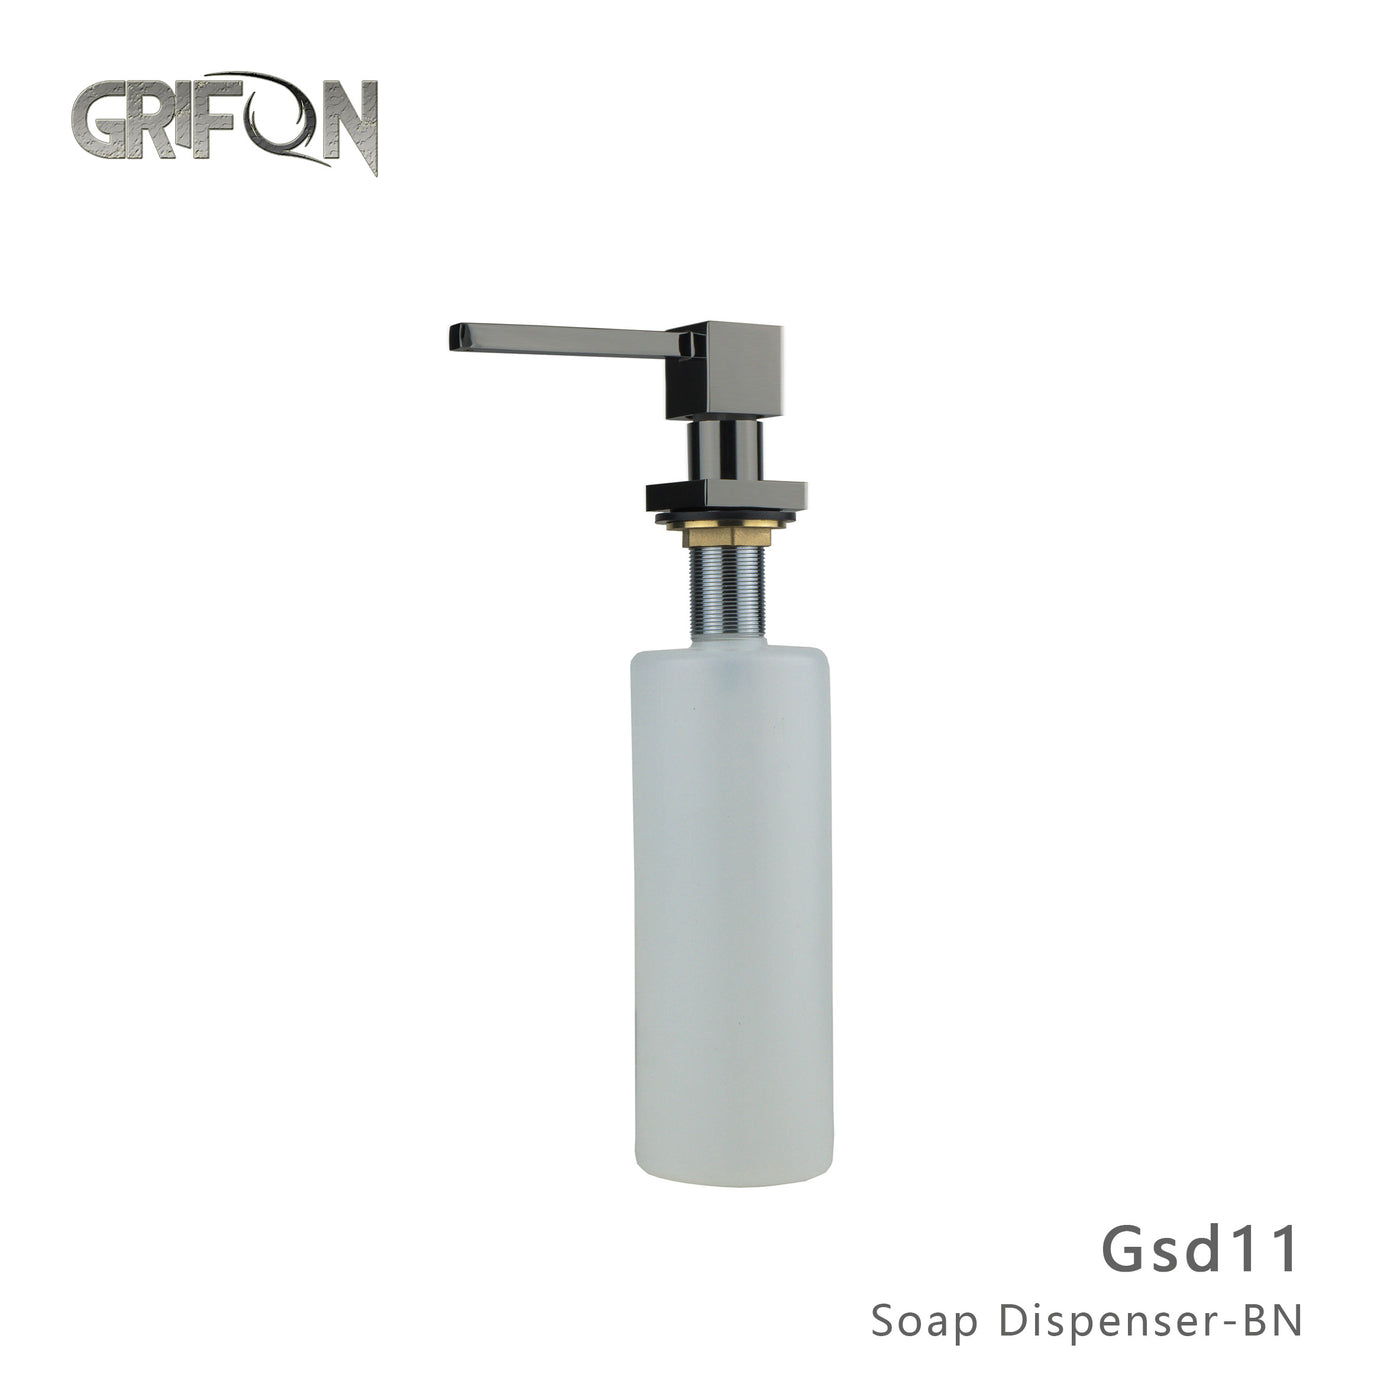 DISTRIBUTEUR DE SAVON - GSD11 Distributeur de savon et de lotion de cuisine en acier inoxydable noir